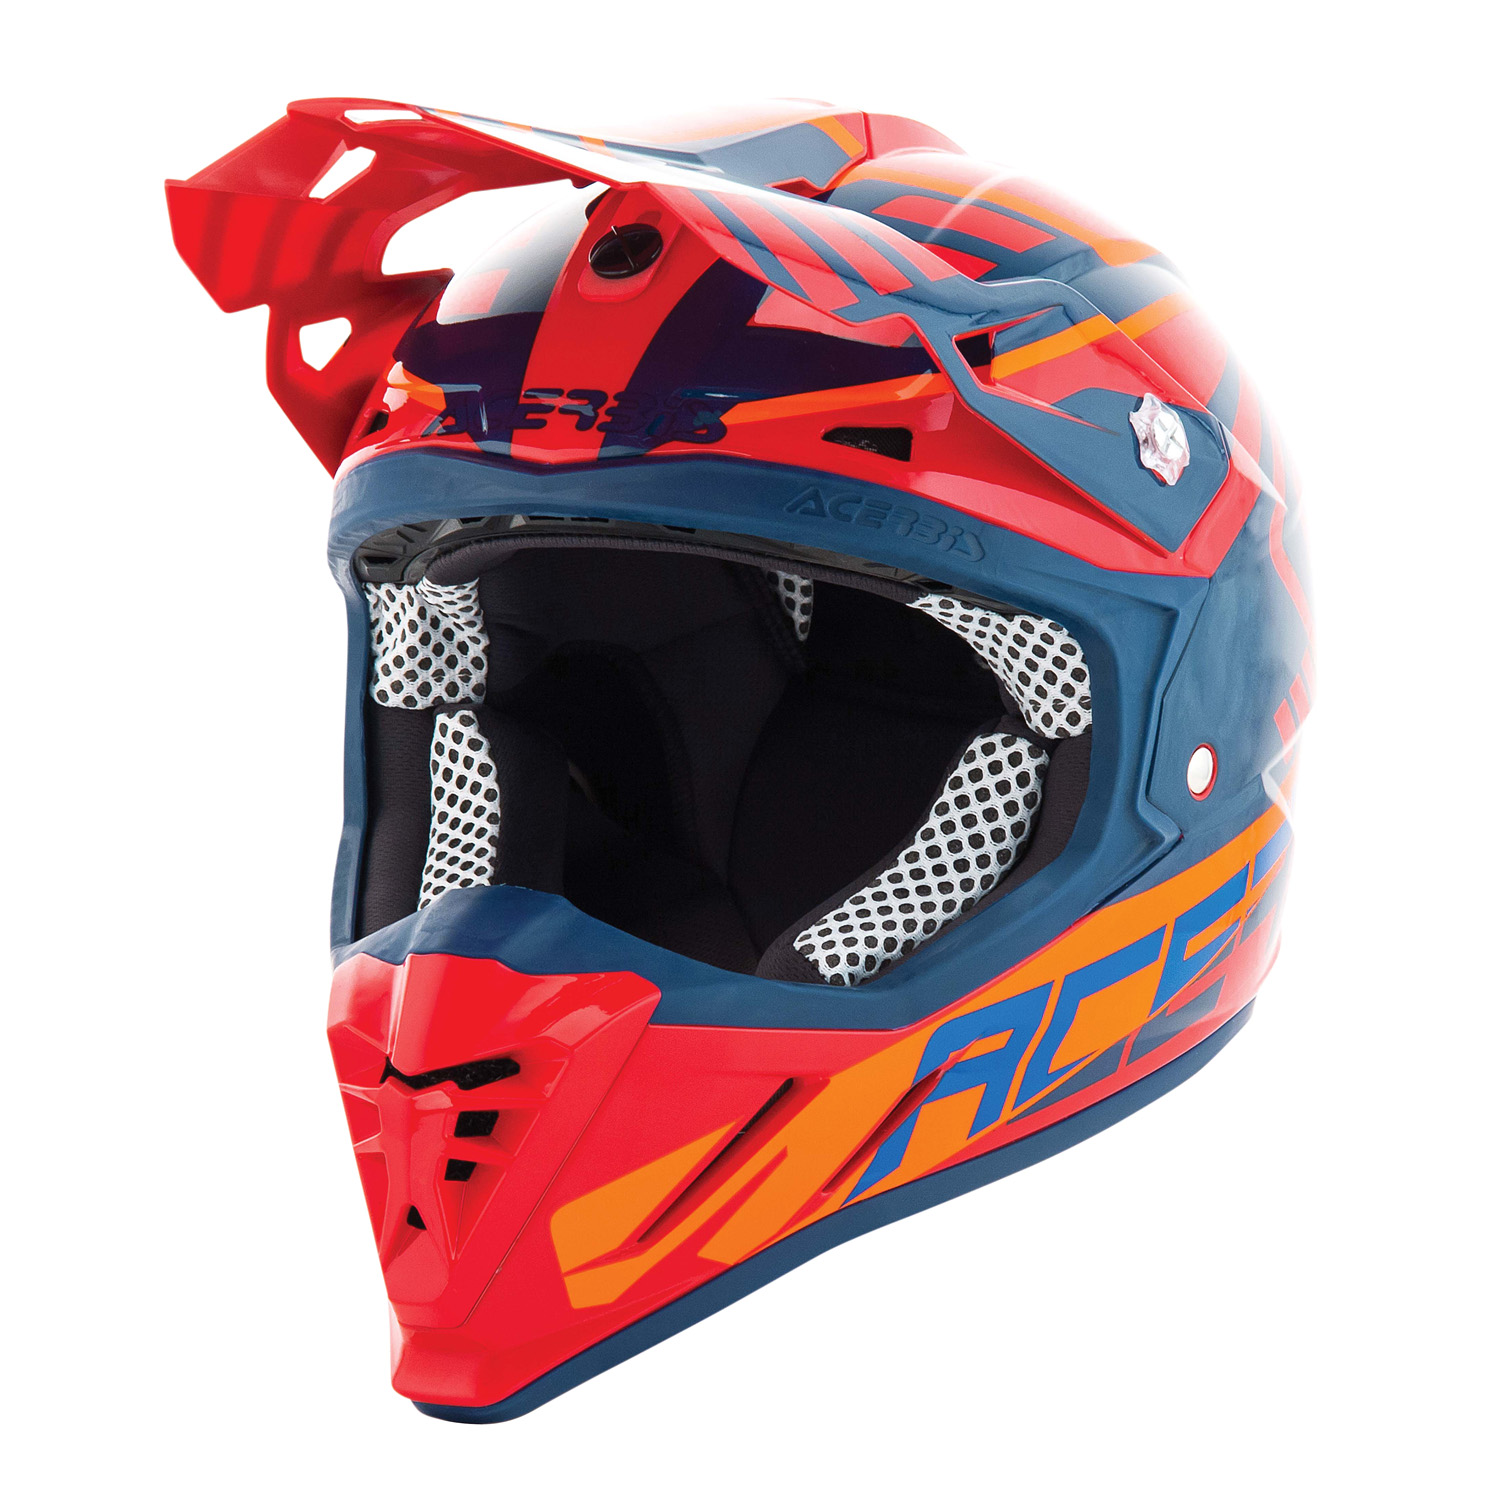 Acerbis Helm Profile 3.0 Skinviper - Rot/Blau